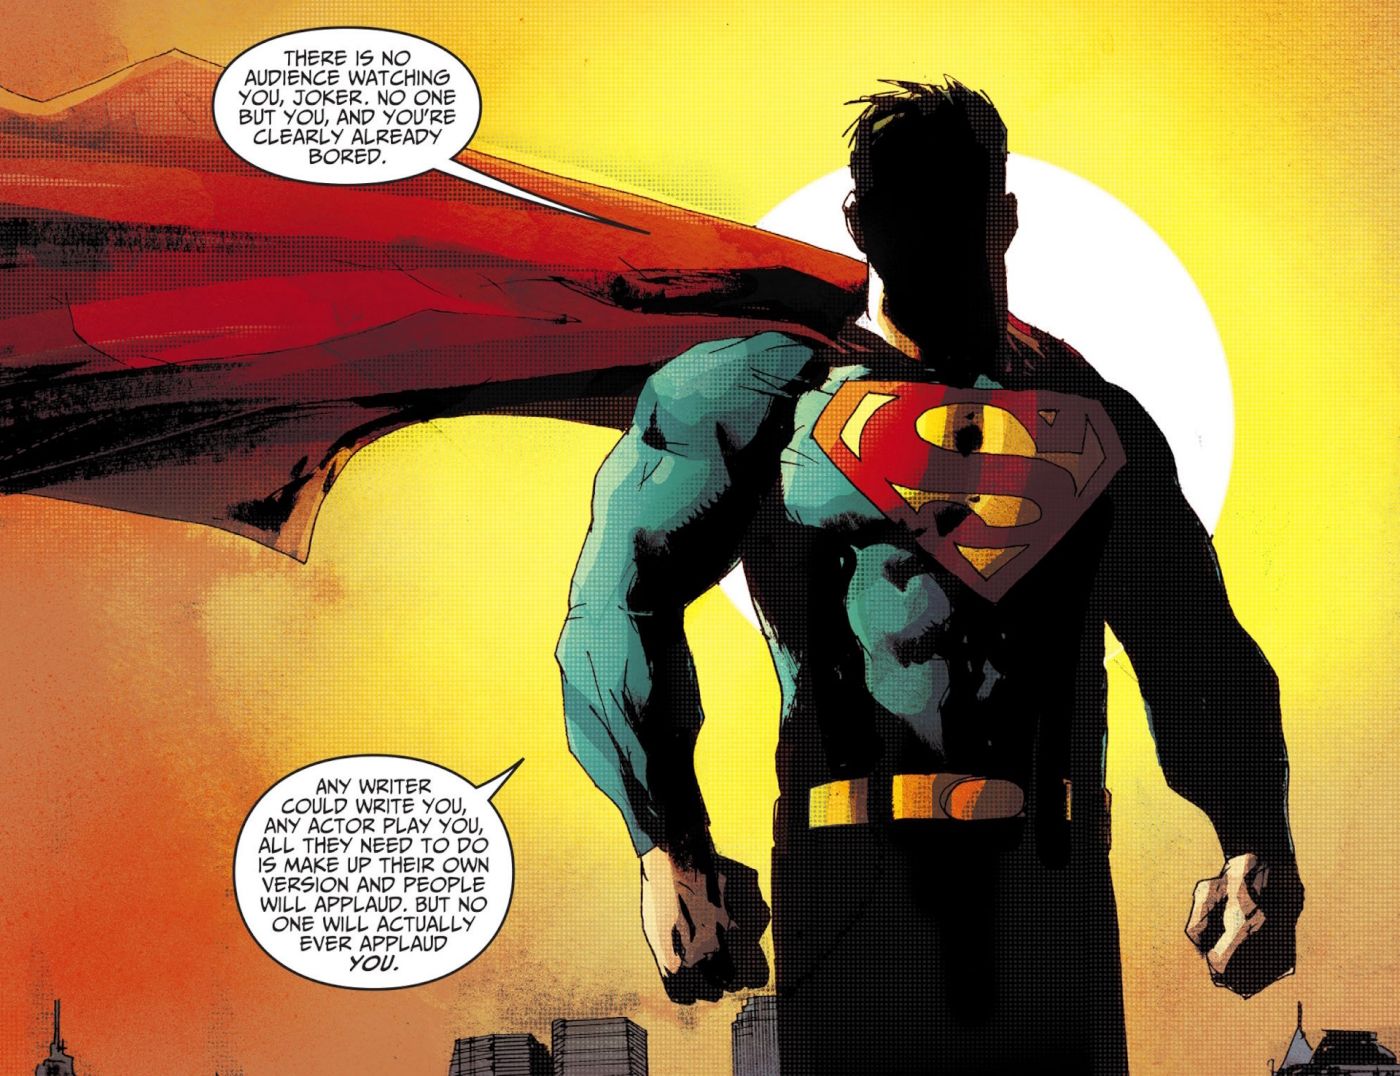 Superman Absolutely Roasts Joker